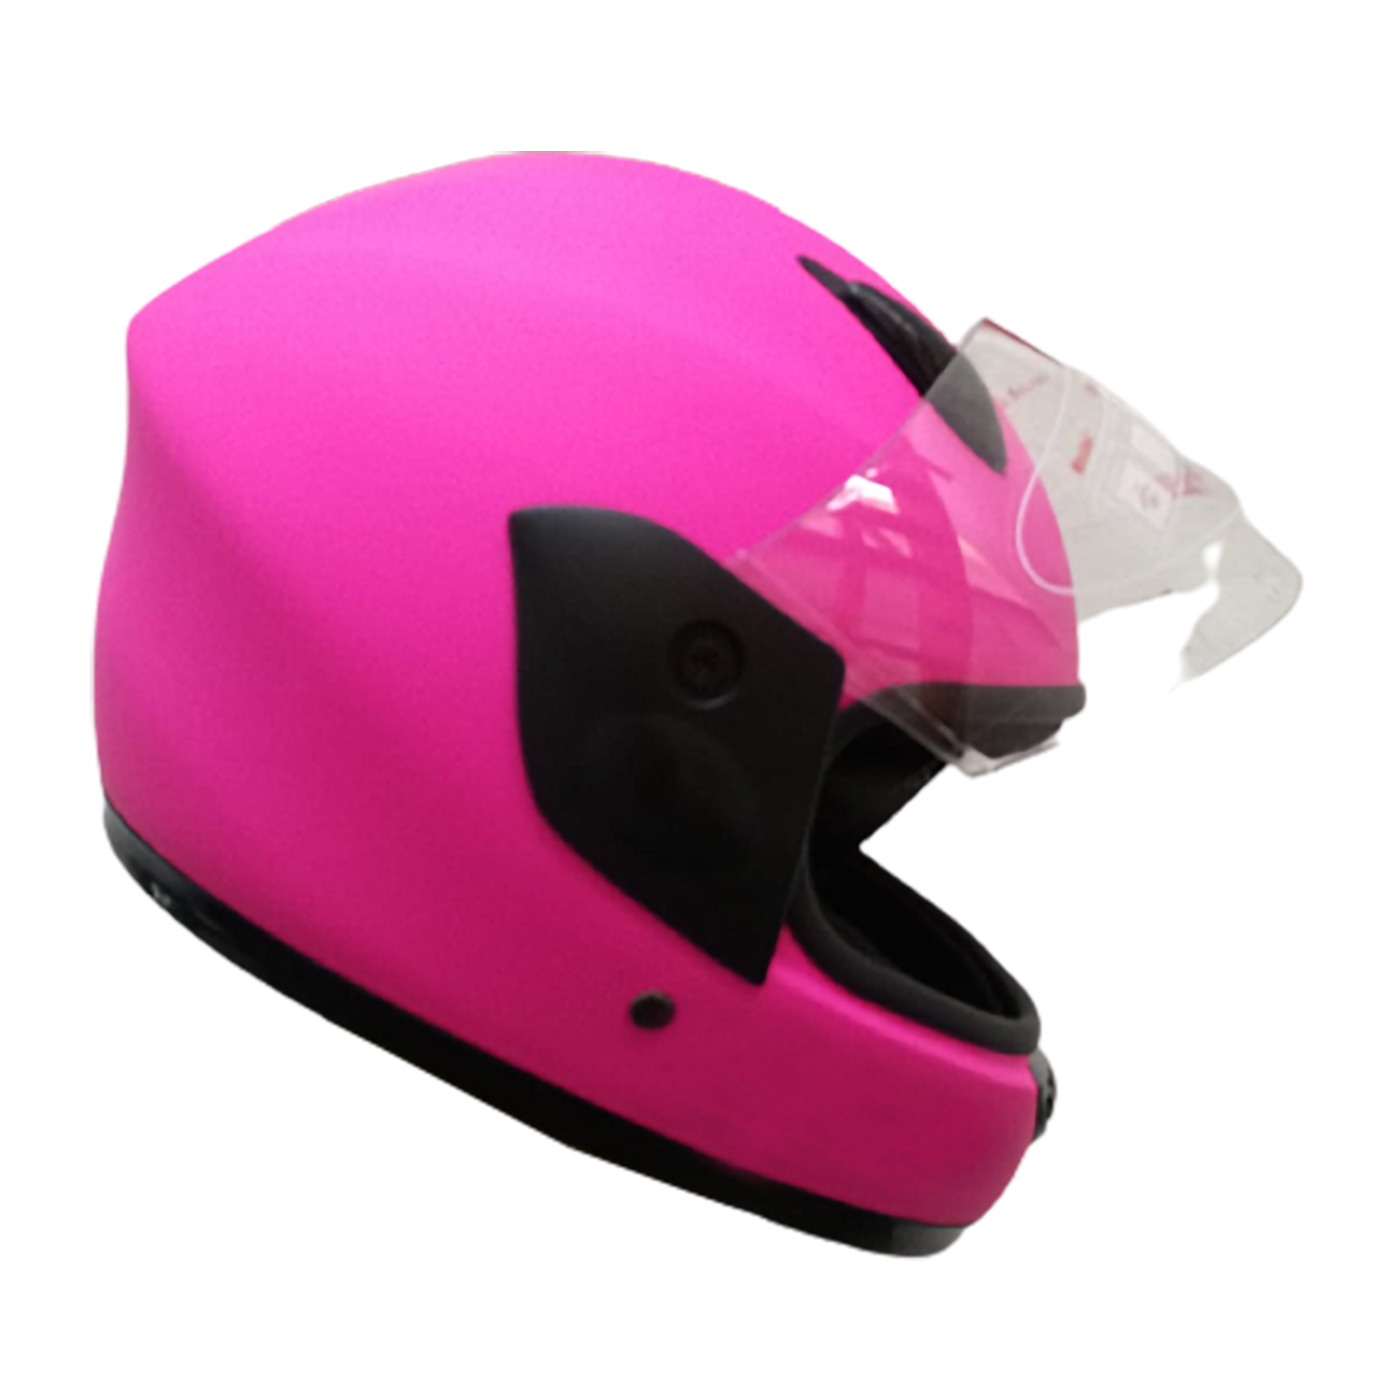 Casco de moto para niñas en rosa mate – ALMACEN TOTAL